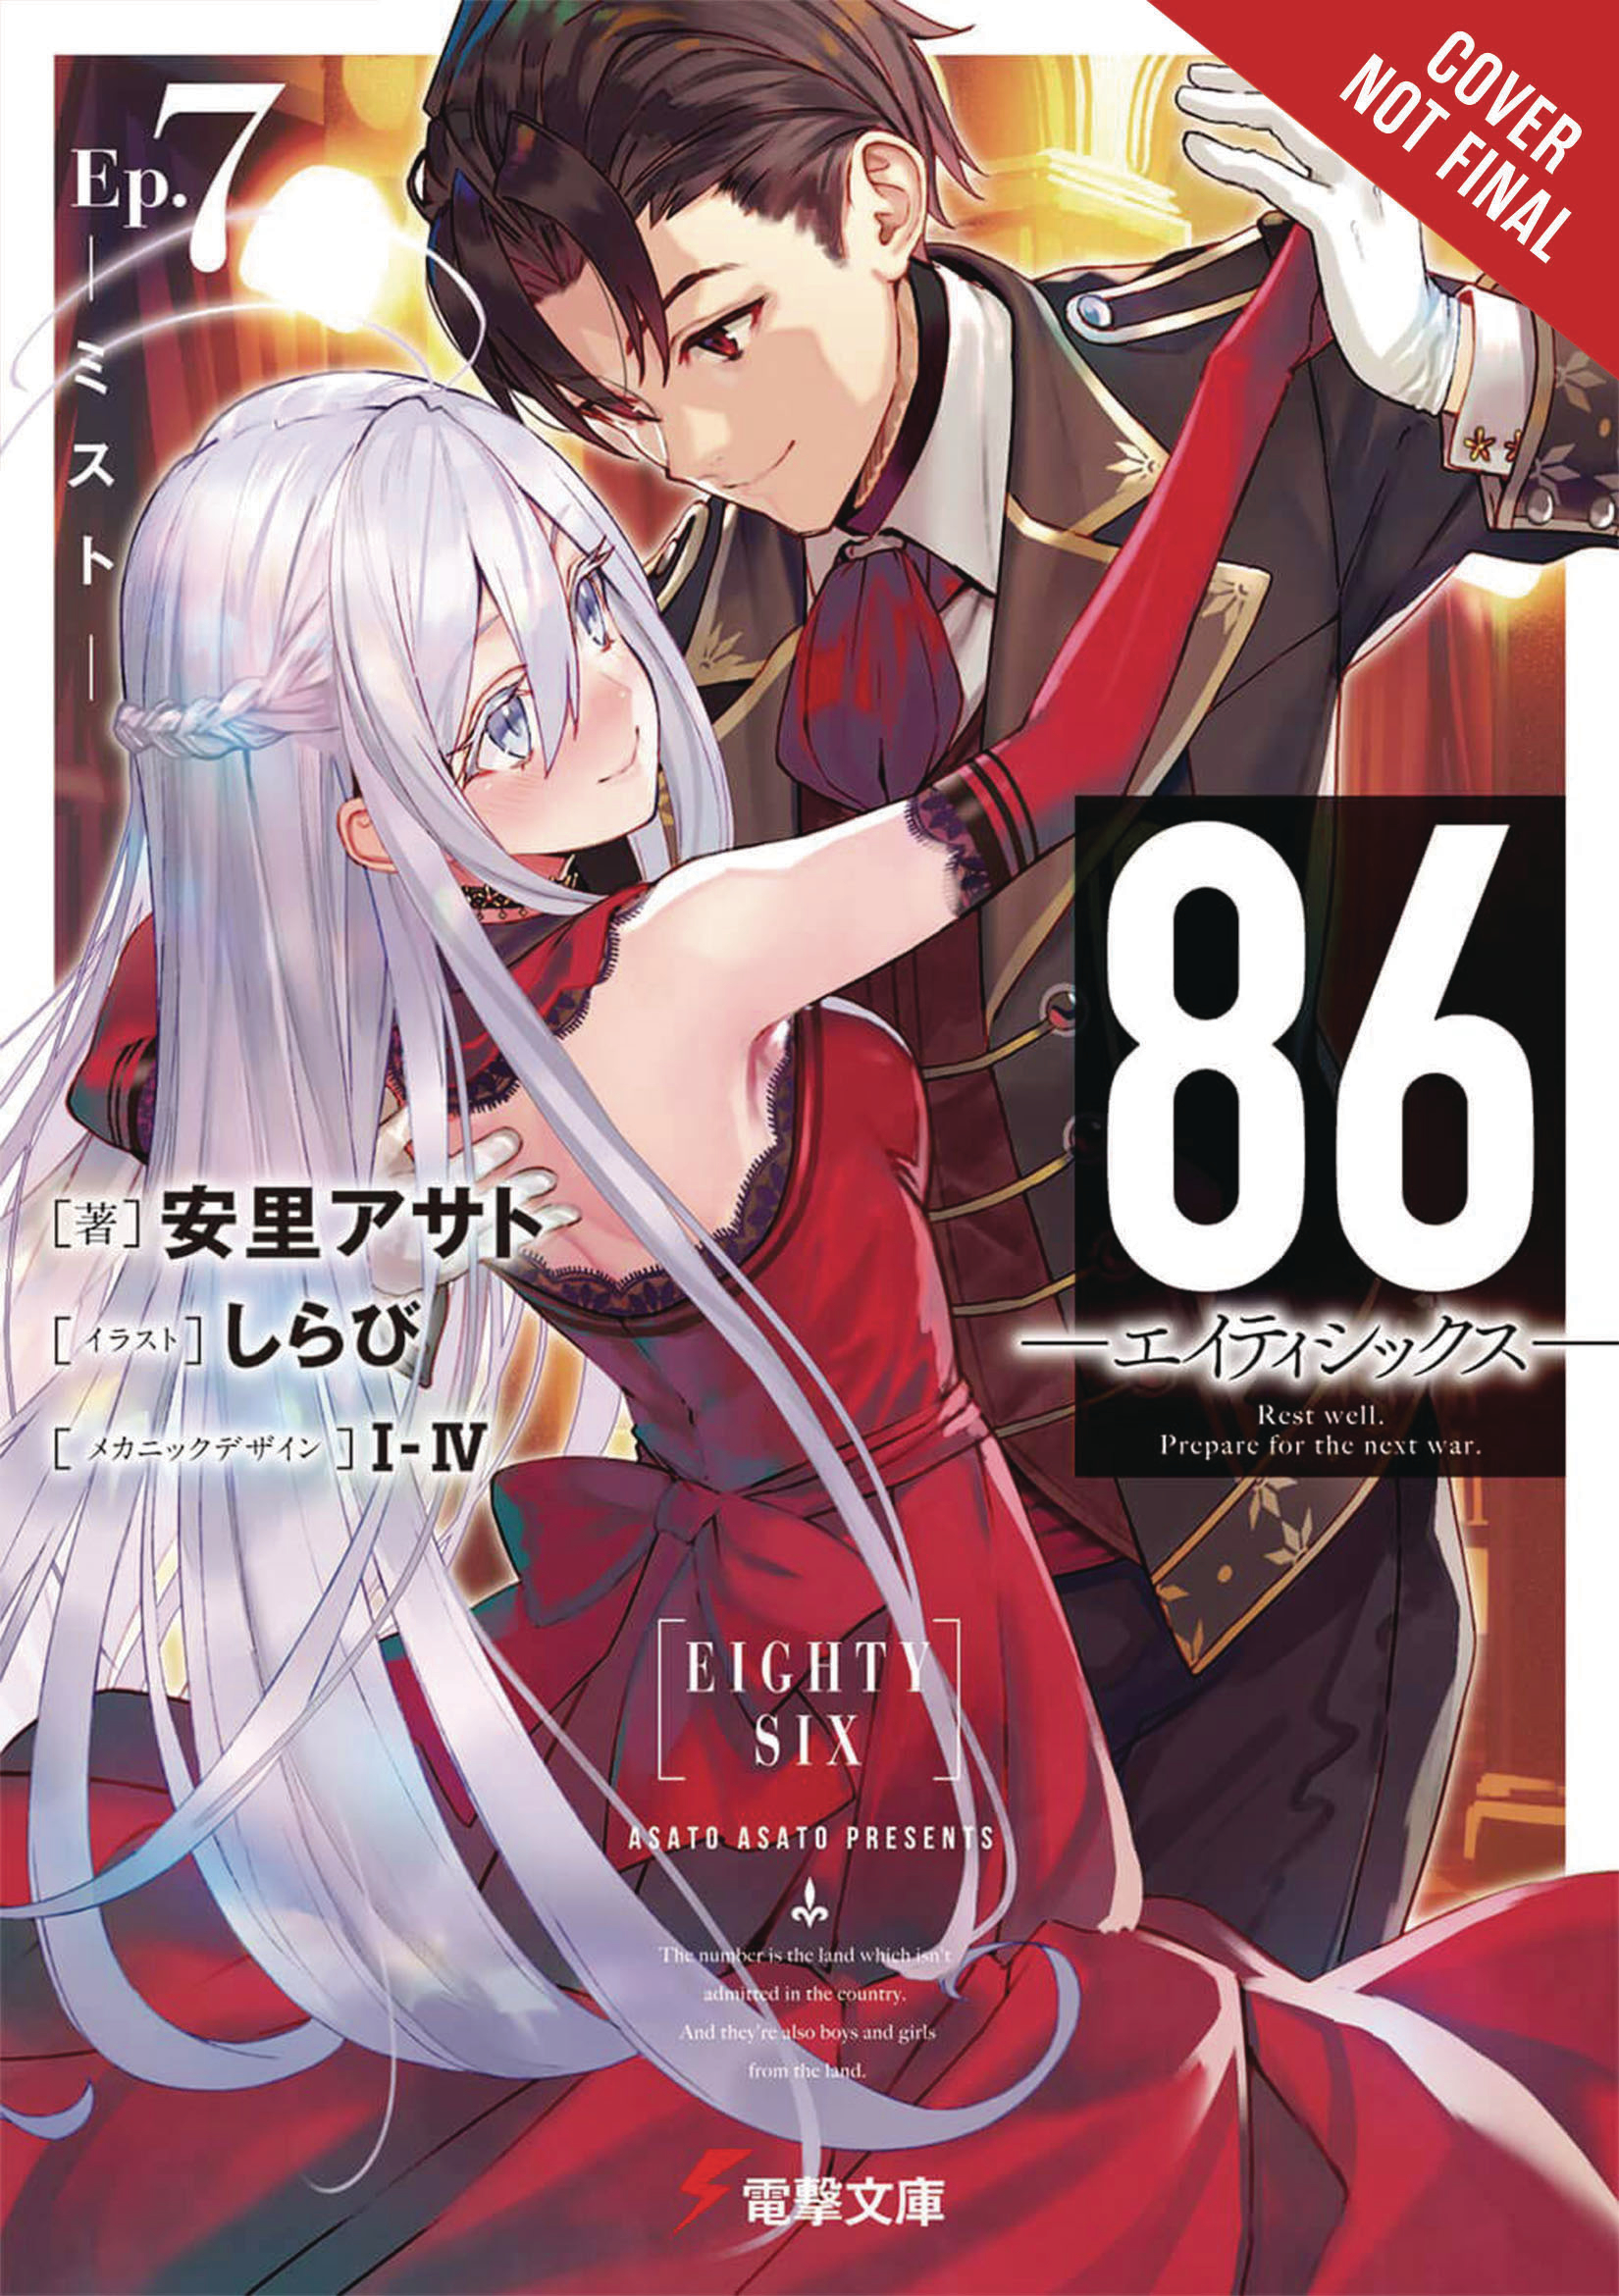 86 Eighty Six Light Novel Volume 7 (Mature)